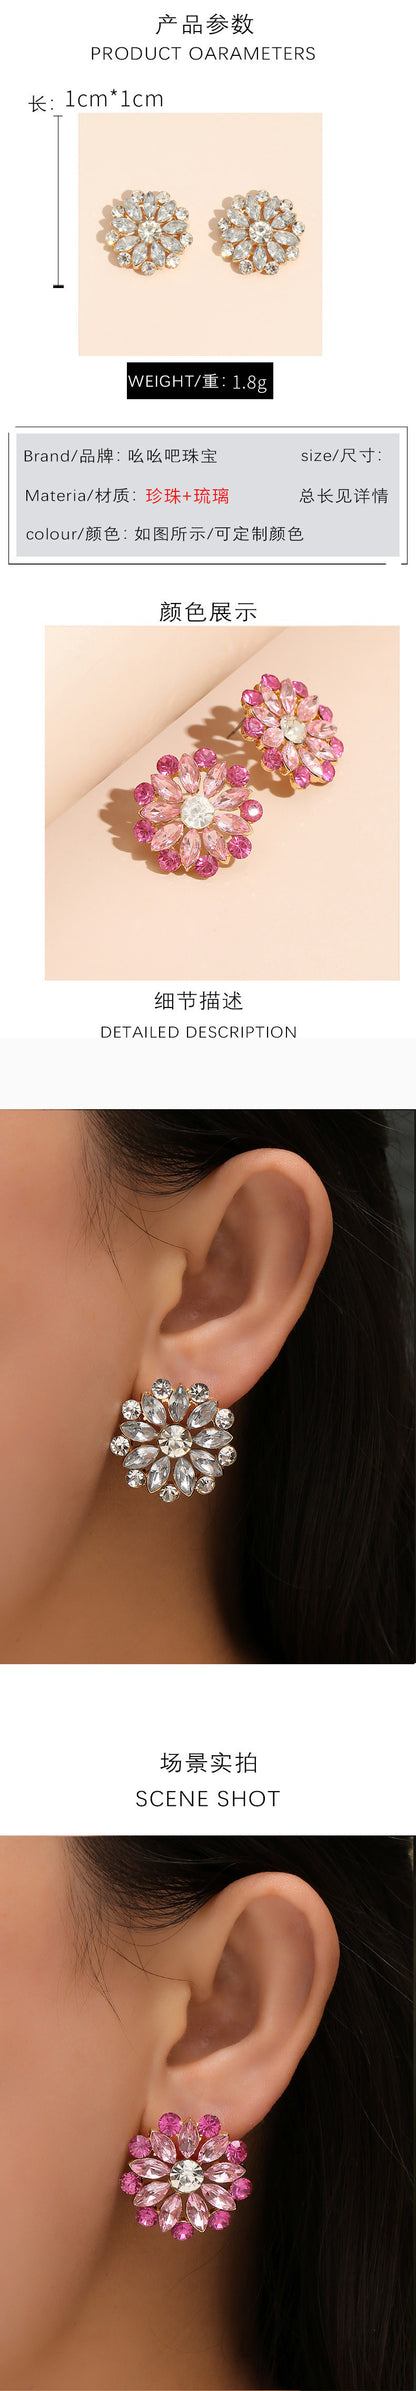 Flower Earrings Simple Full Diamond Zircon Ear Jewelry